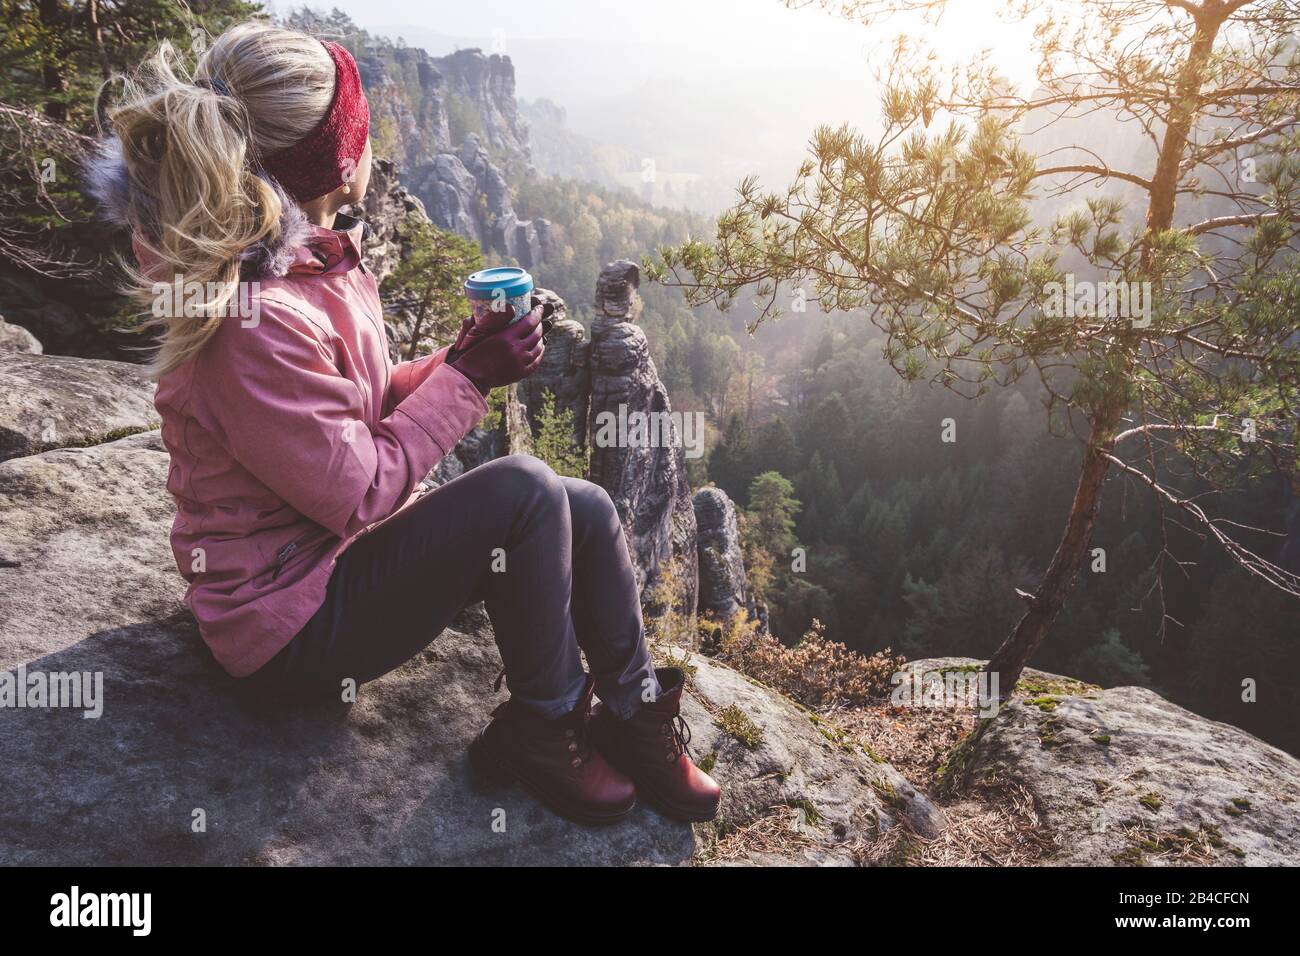 Biondo Frau mit Getränk in den Händen sitzt nach Wanderung auf einem Felsen und genießt die Aussicht, Reise-Lifestyle-Abenteuer-Konzept Foto Stock